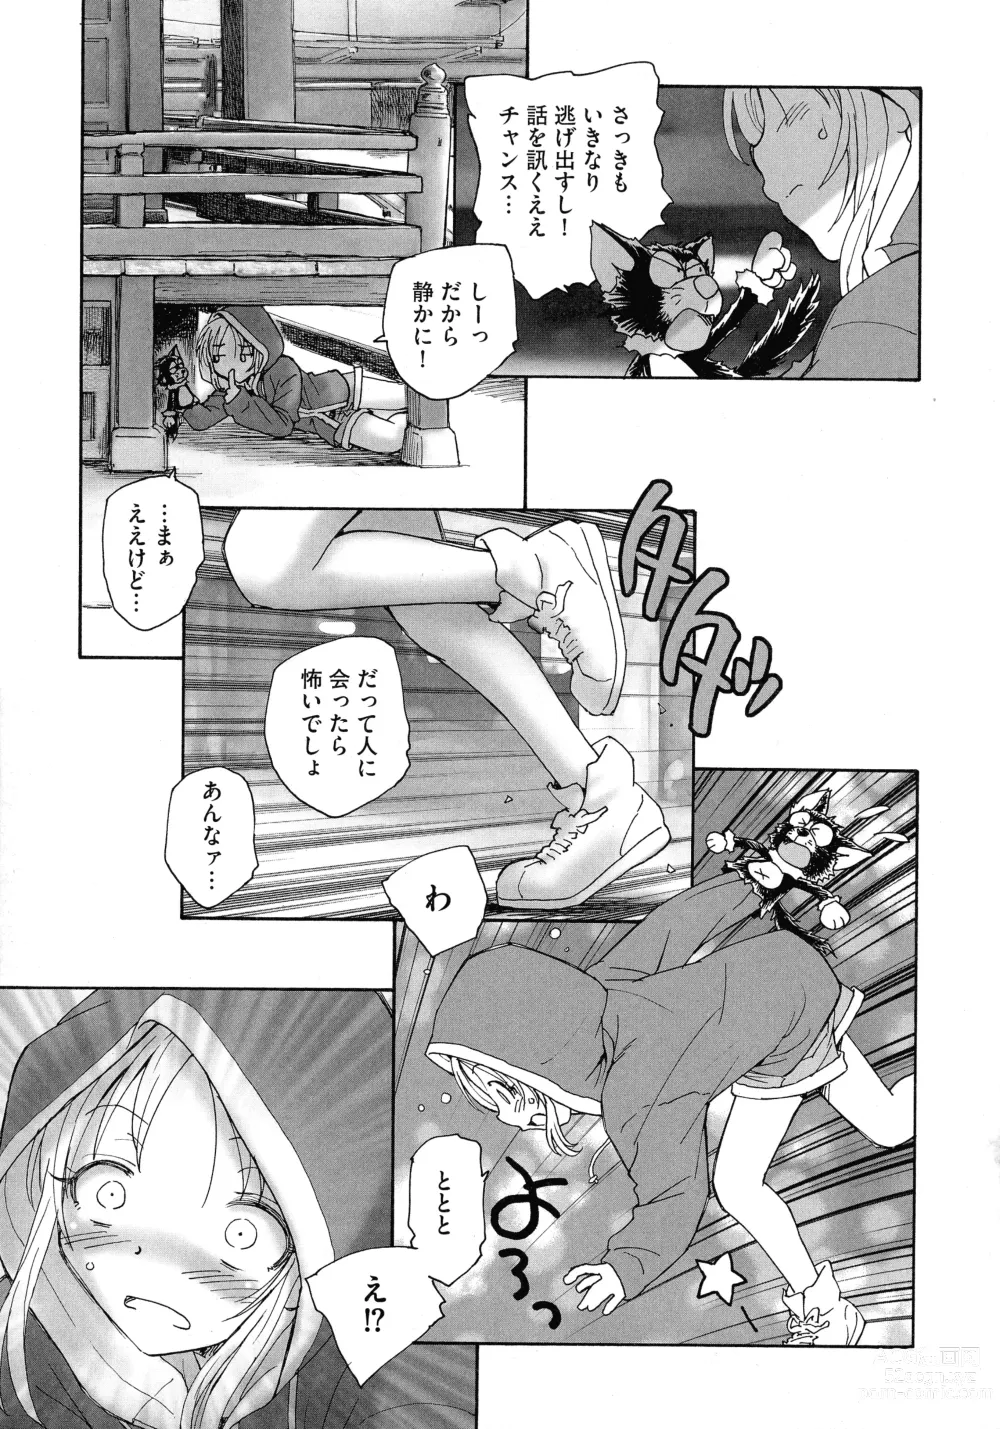 Page 17 of manga Mayoi no Machi no Akazukin Jo